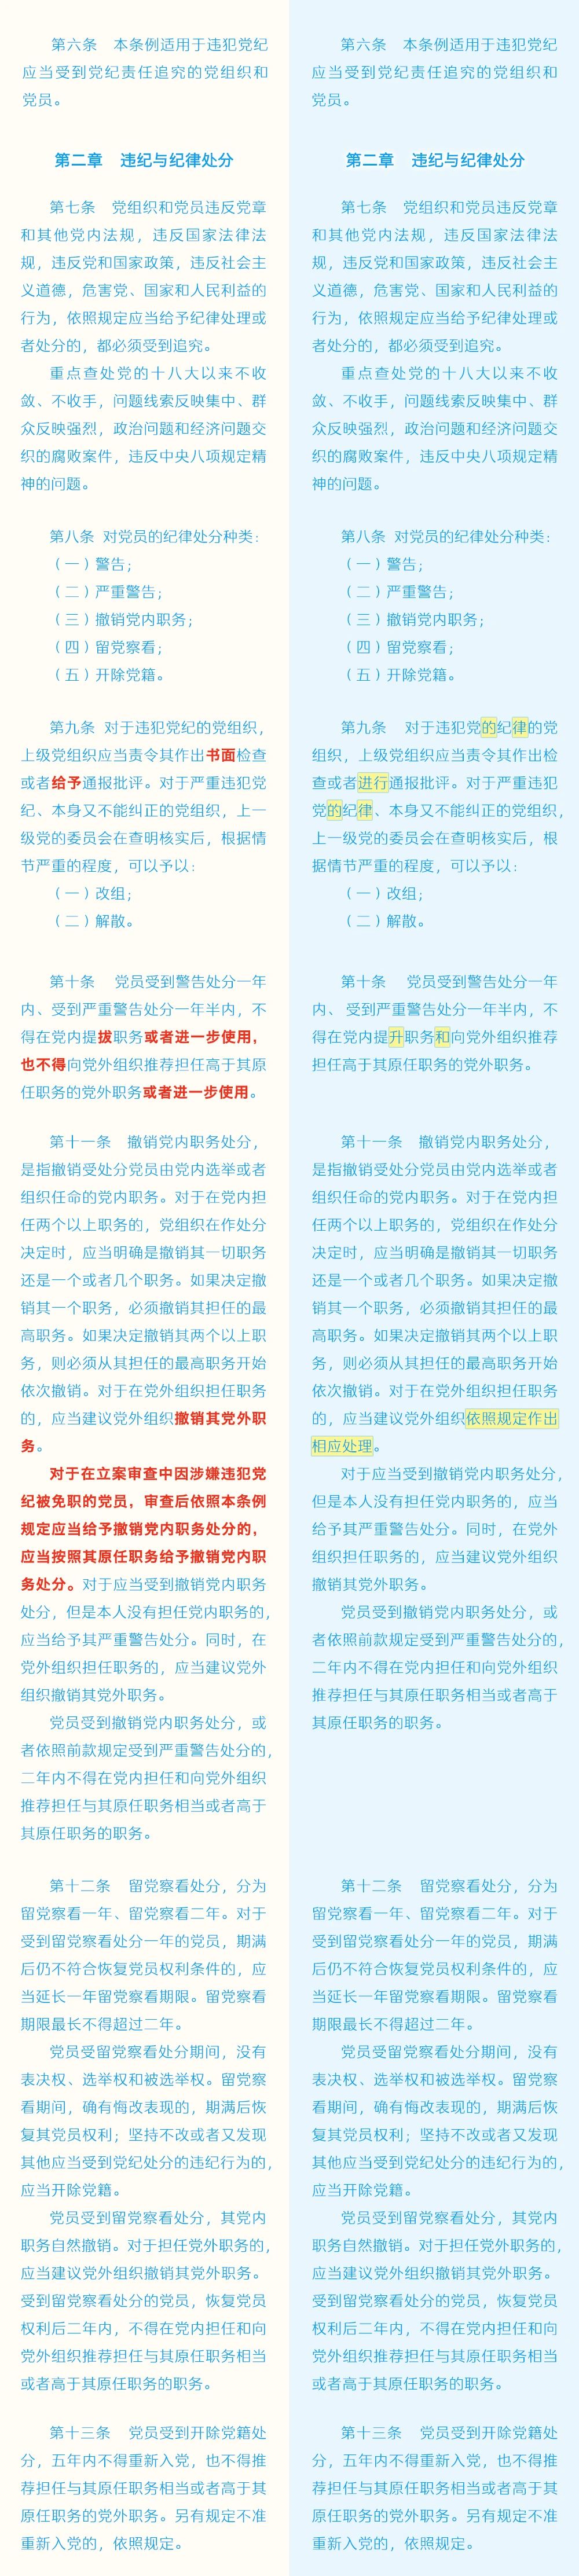 《中国共产党纪律处分条例》修订条文对照表2.jpg